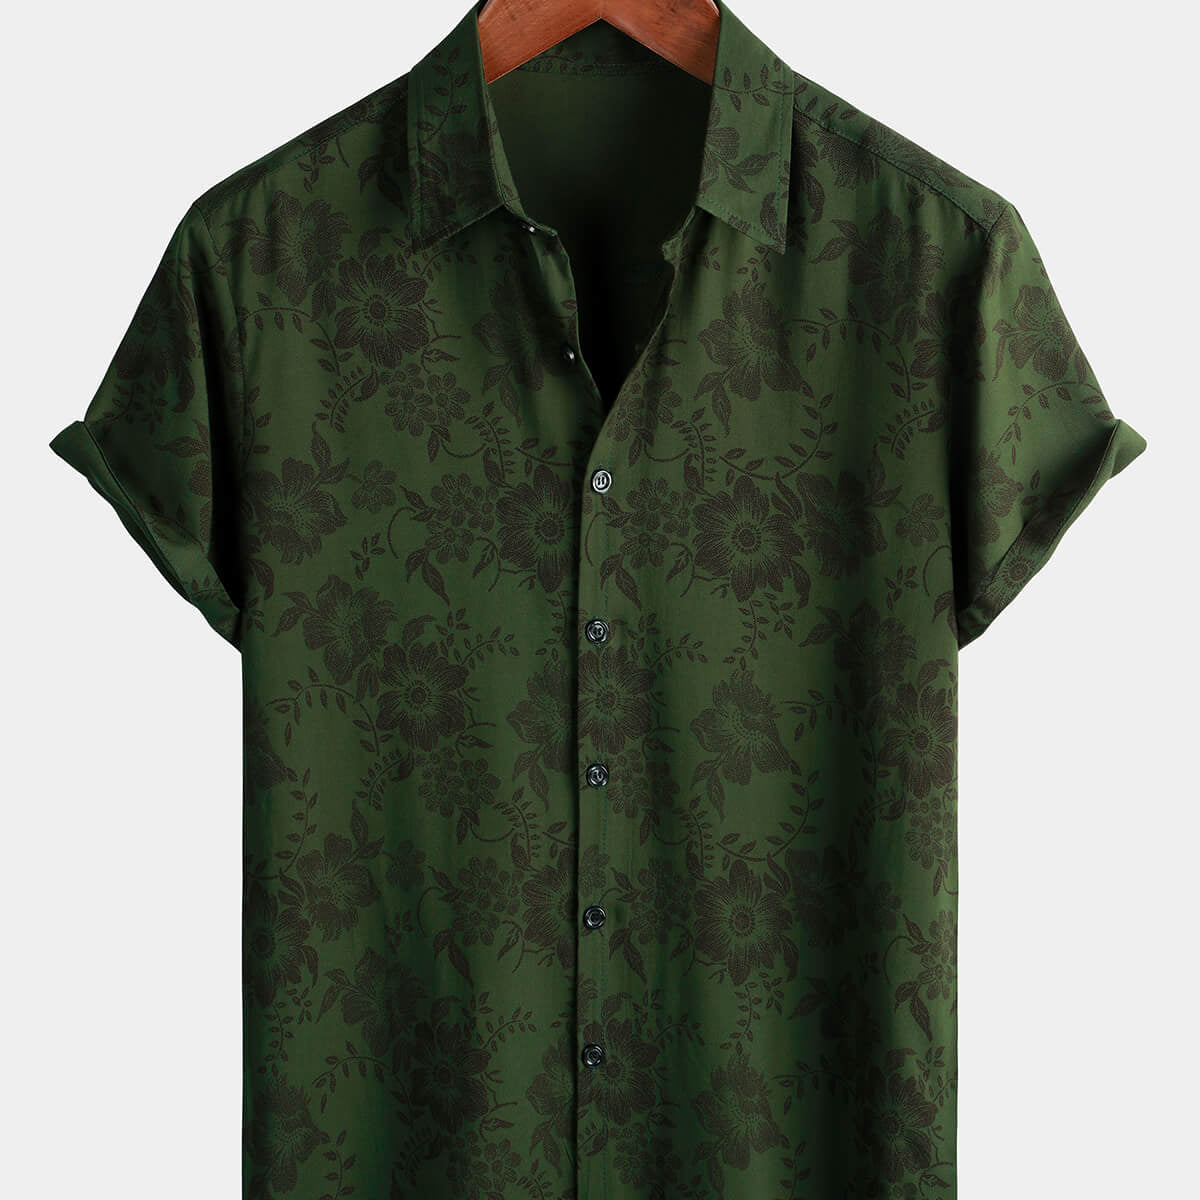 Chemise à manches courtes boutonnée pour hommes, motif Floral vert foncé, Vintage hawaïen, doux, vacances à la plage